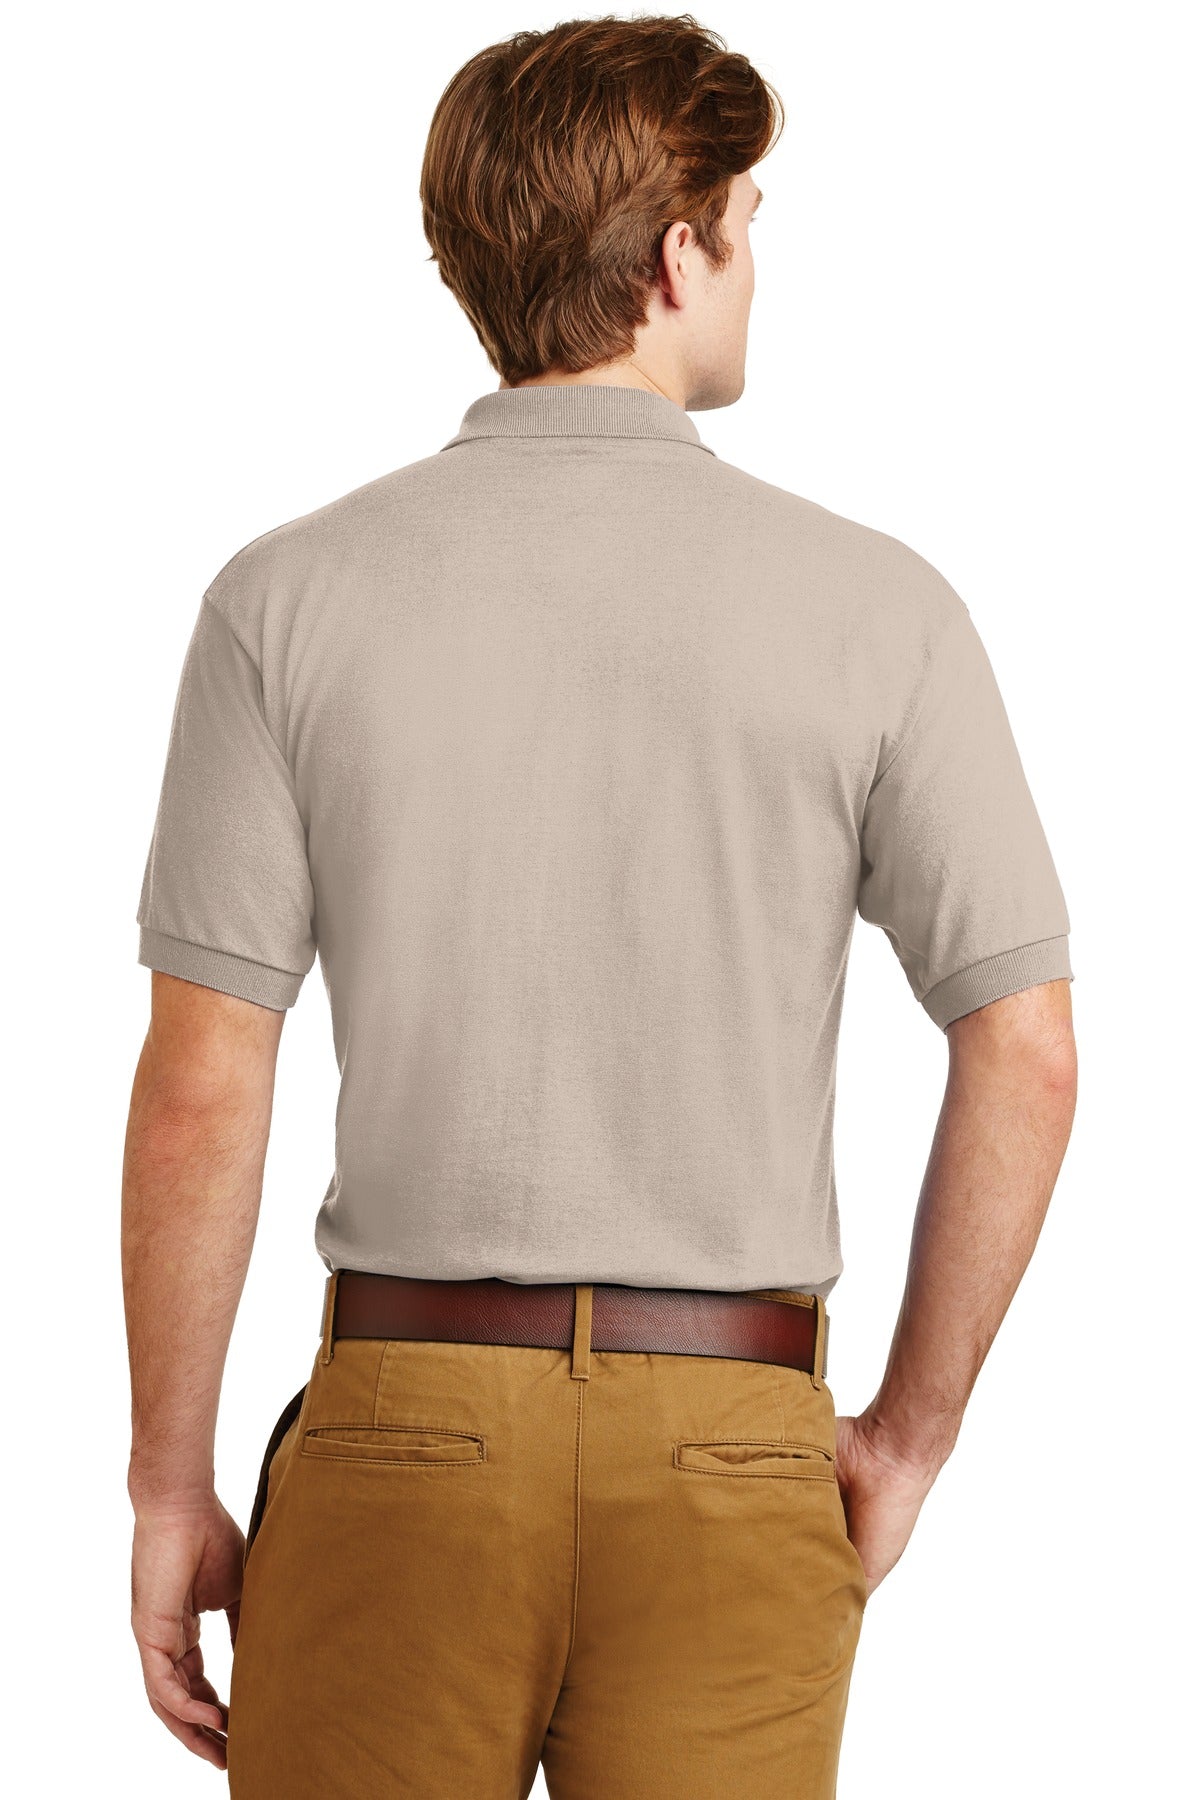 Gildan® - DryBlend® 6-Ounce Jersey Knit Sport Shirt. 8800 [Sand] - DFW Impression